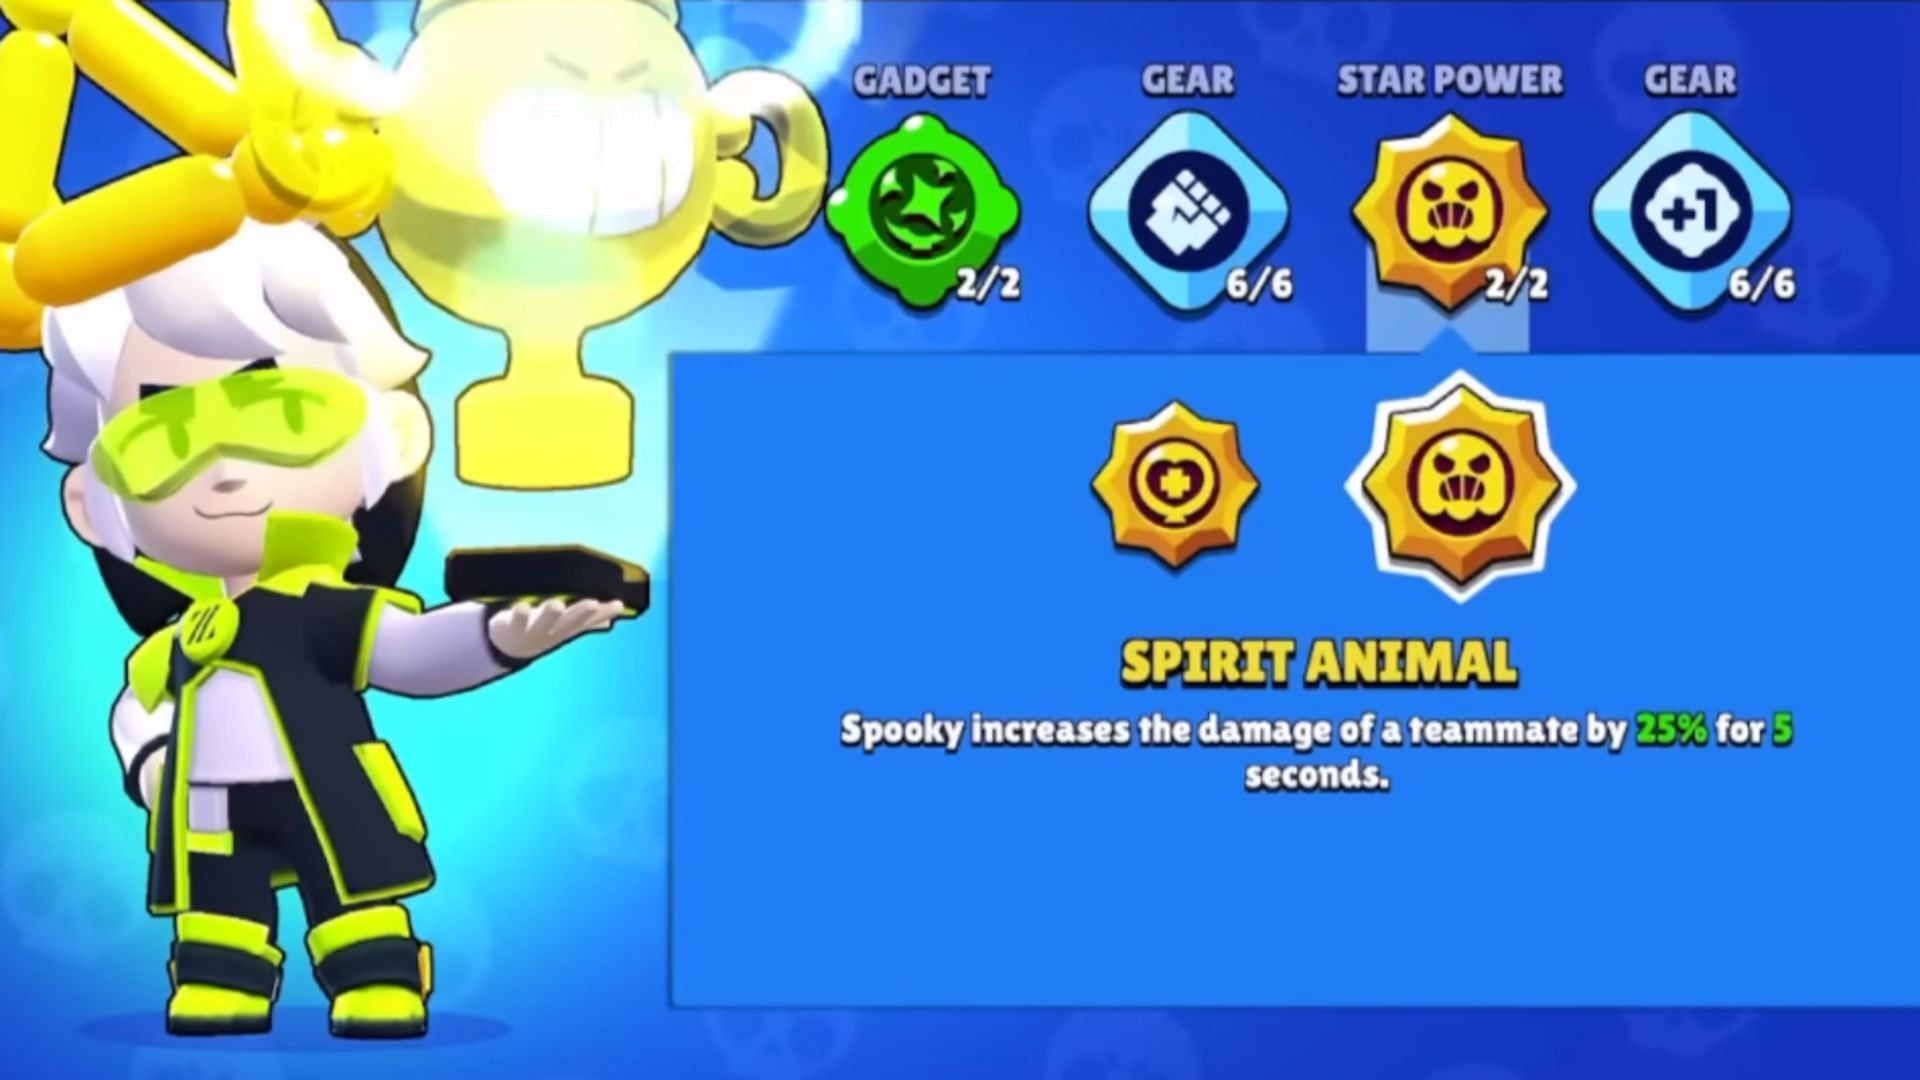 Spirit Animal Star Power (Image via Supercell)